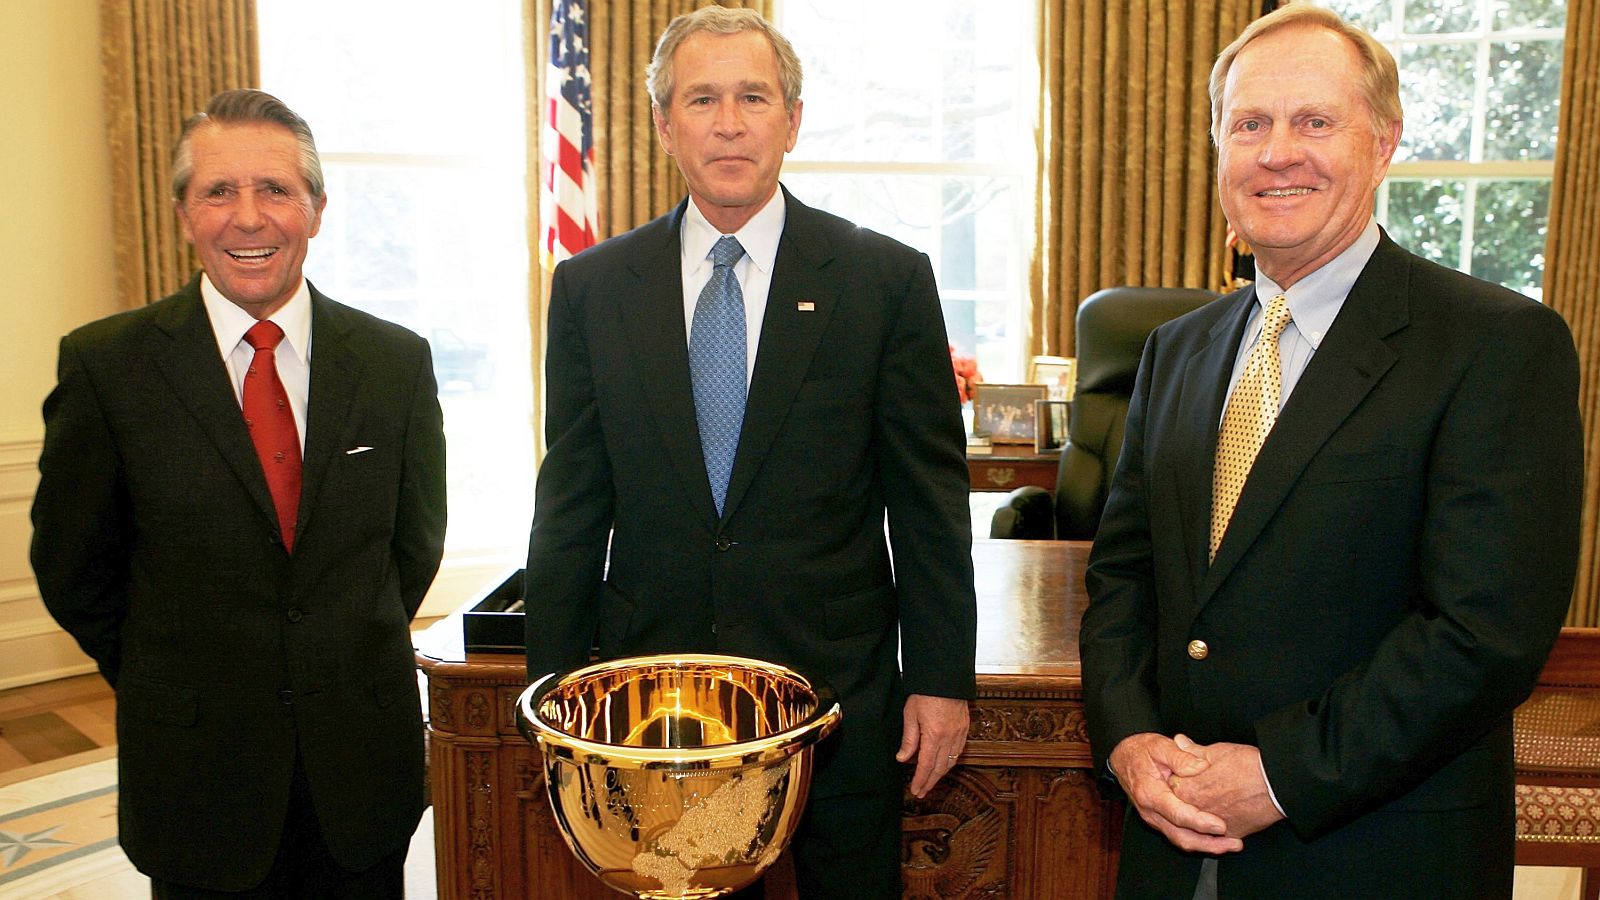 Die PresCup-Captains beim Präsidenten: Jack Nicklaus und Gary Player besuchten George W. Bush 2005 im Weißen Haus. | © Alex Wong/Getty Images